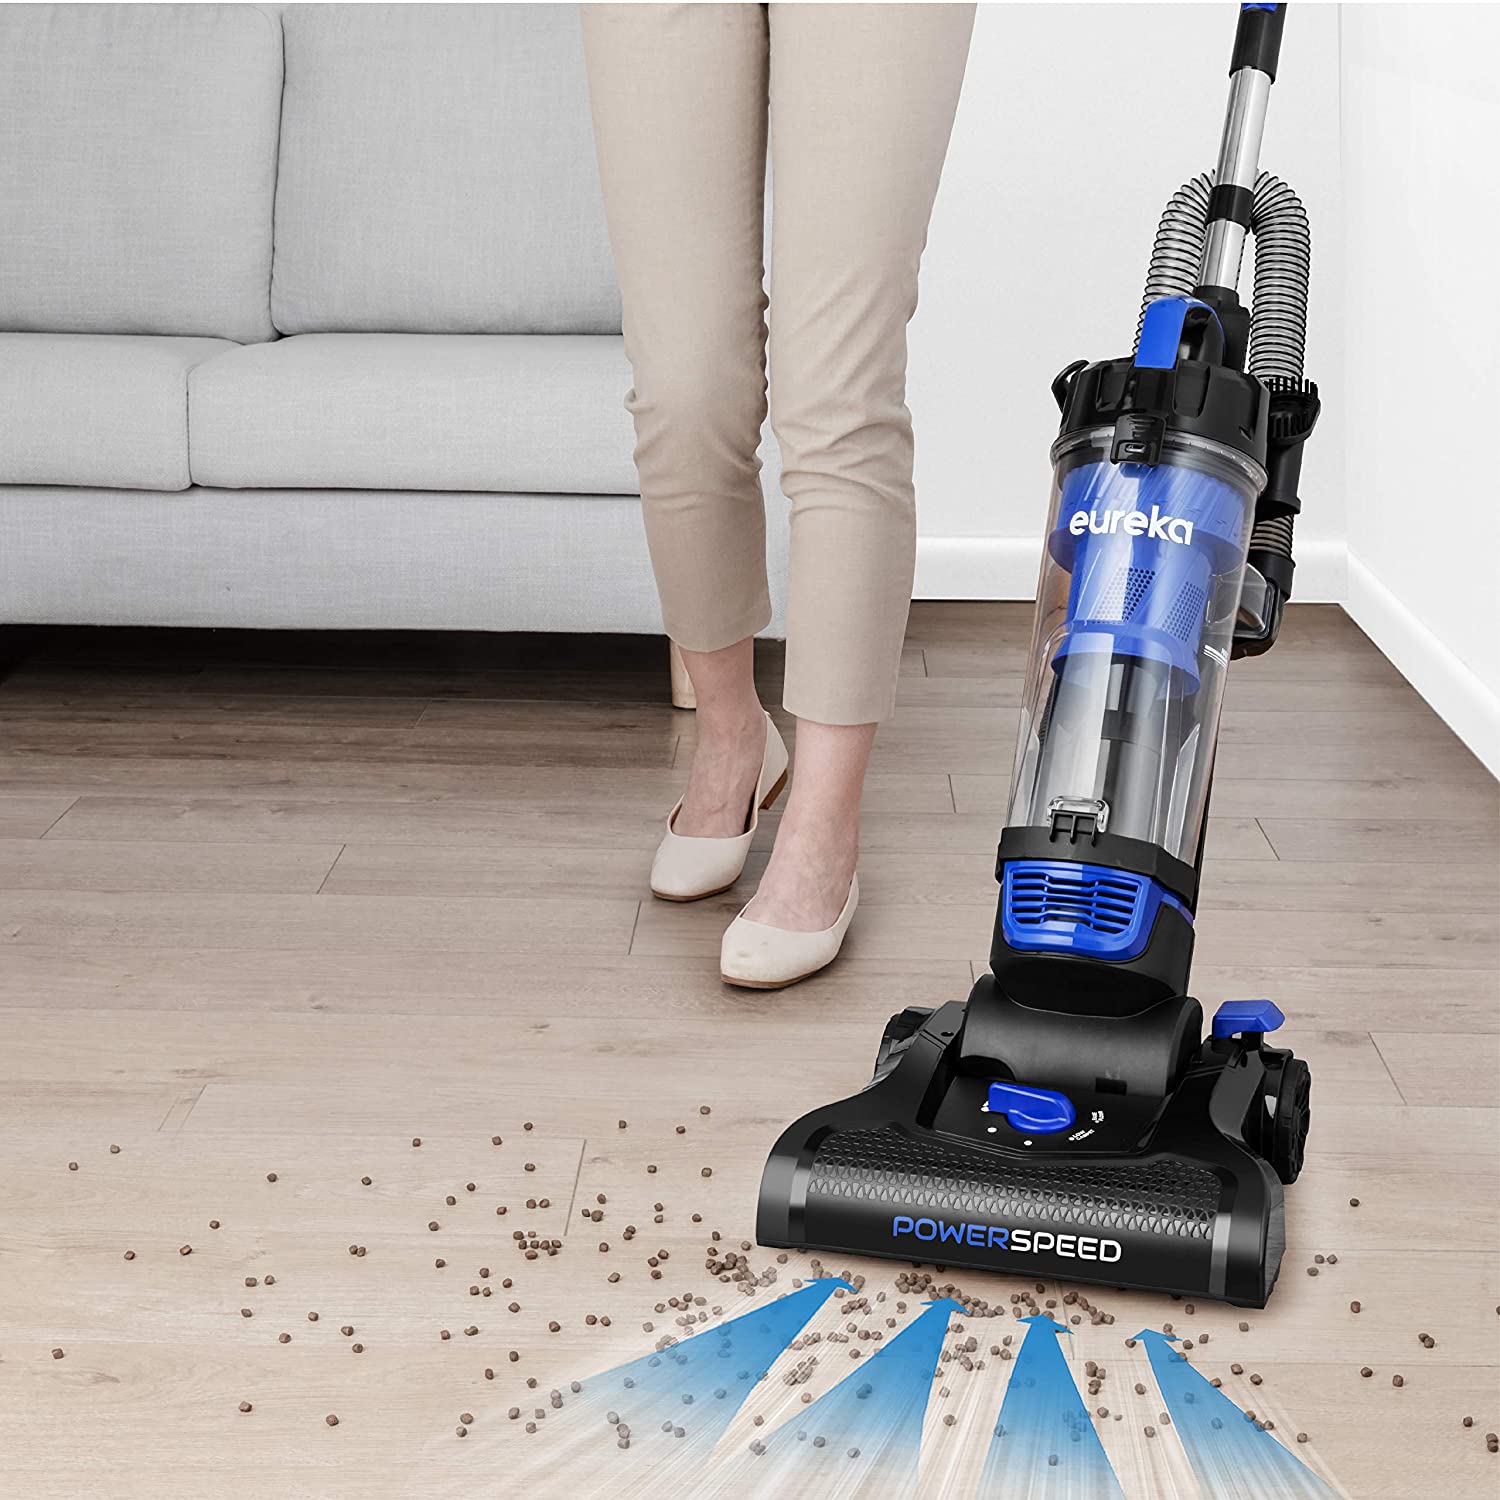 choosing the best vacuum cleaner